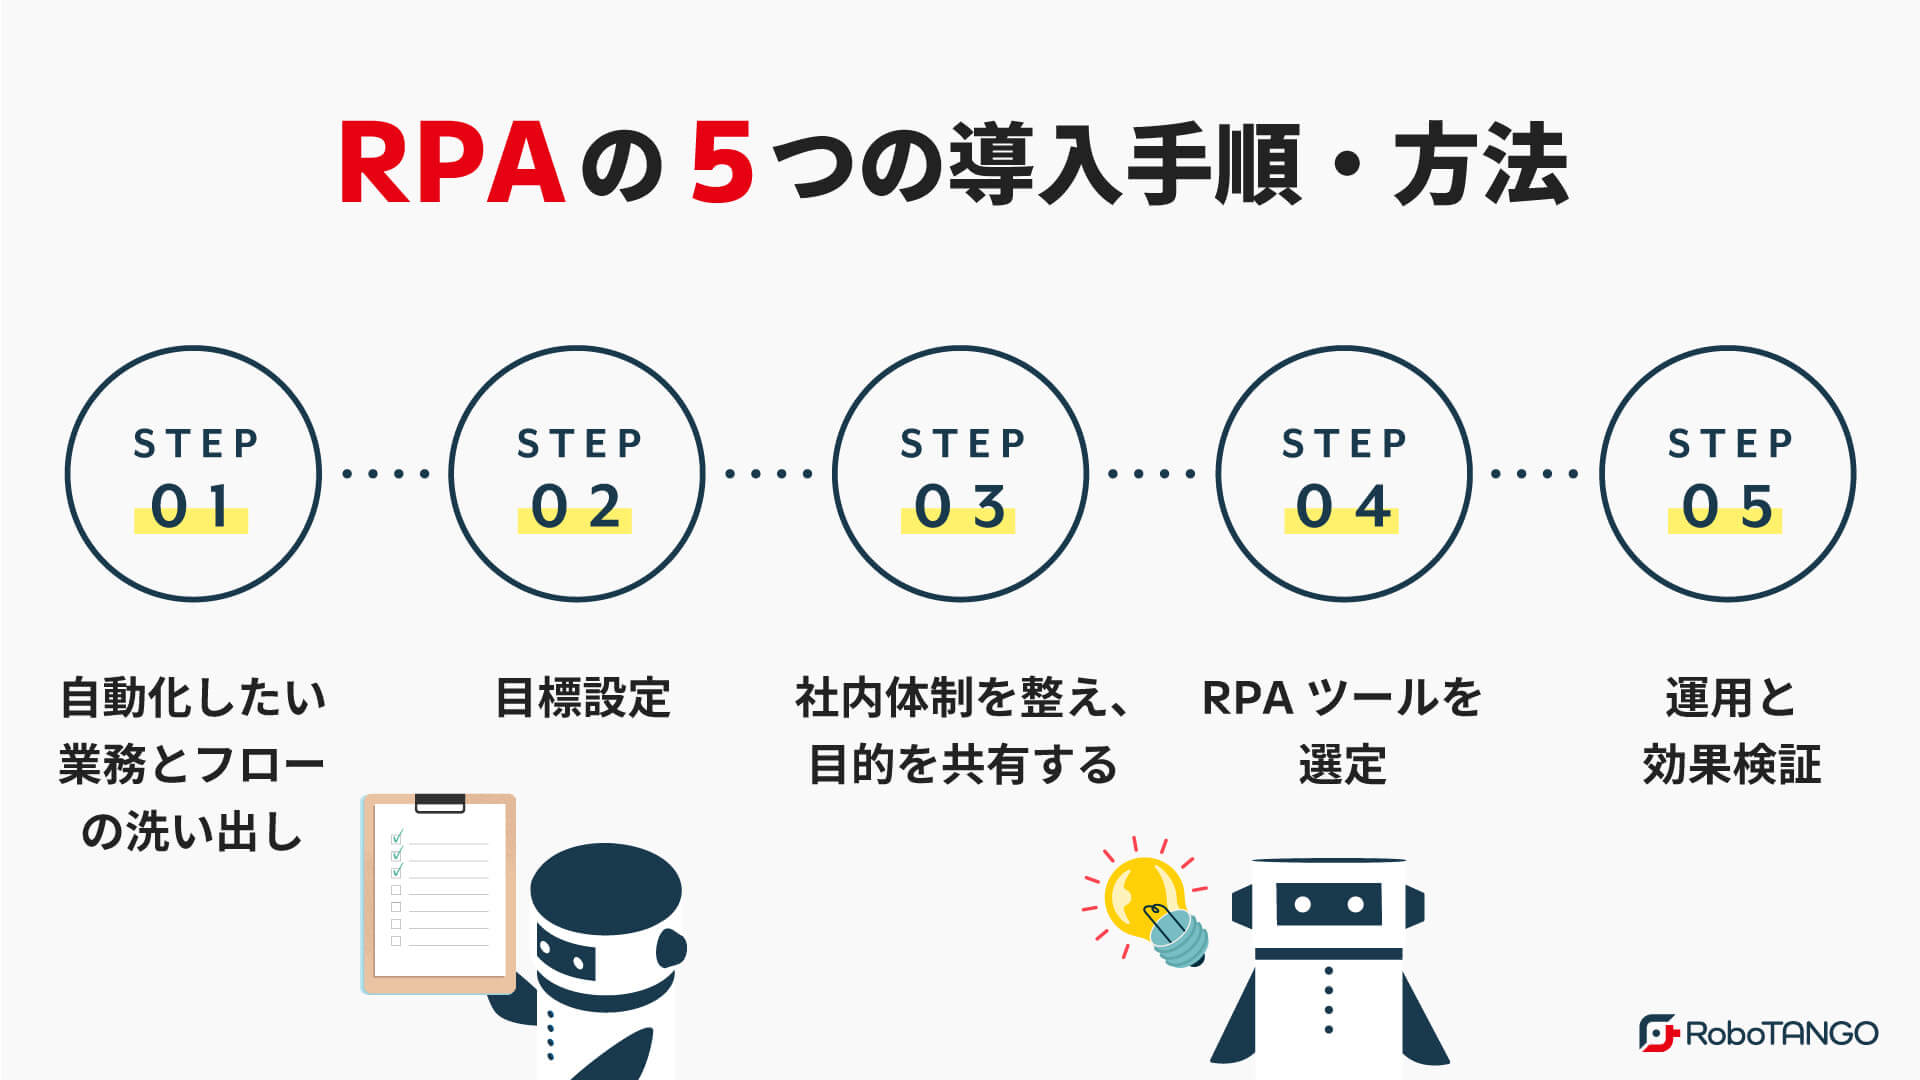 RPAの導入手順・方法をわかりやすく解説します。